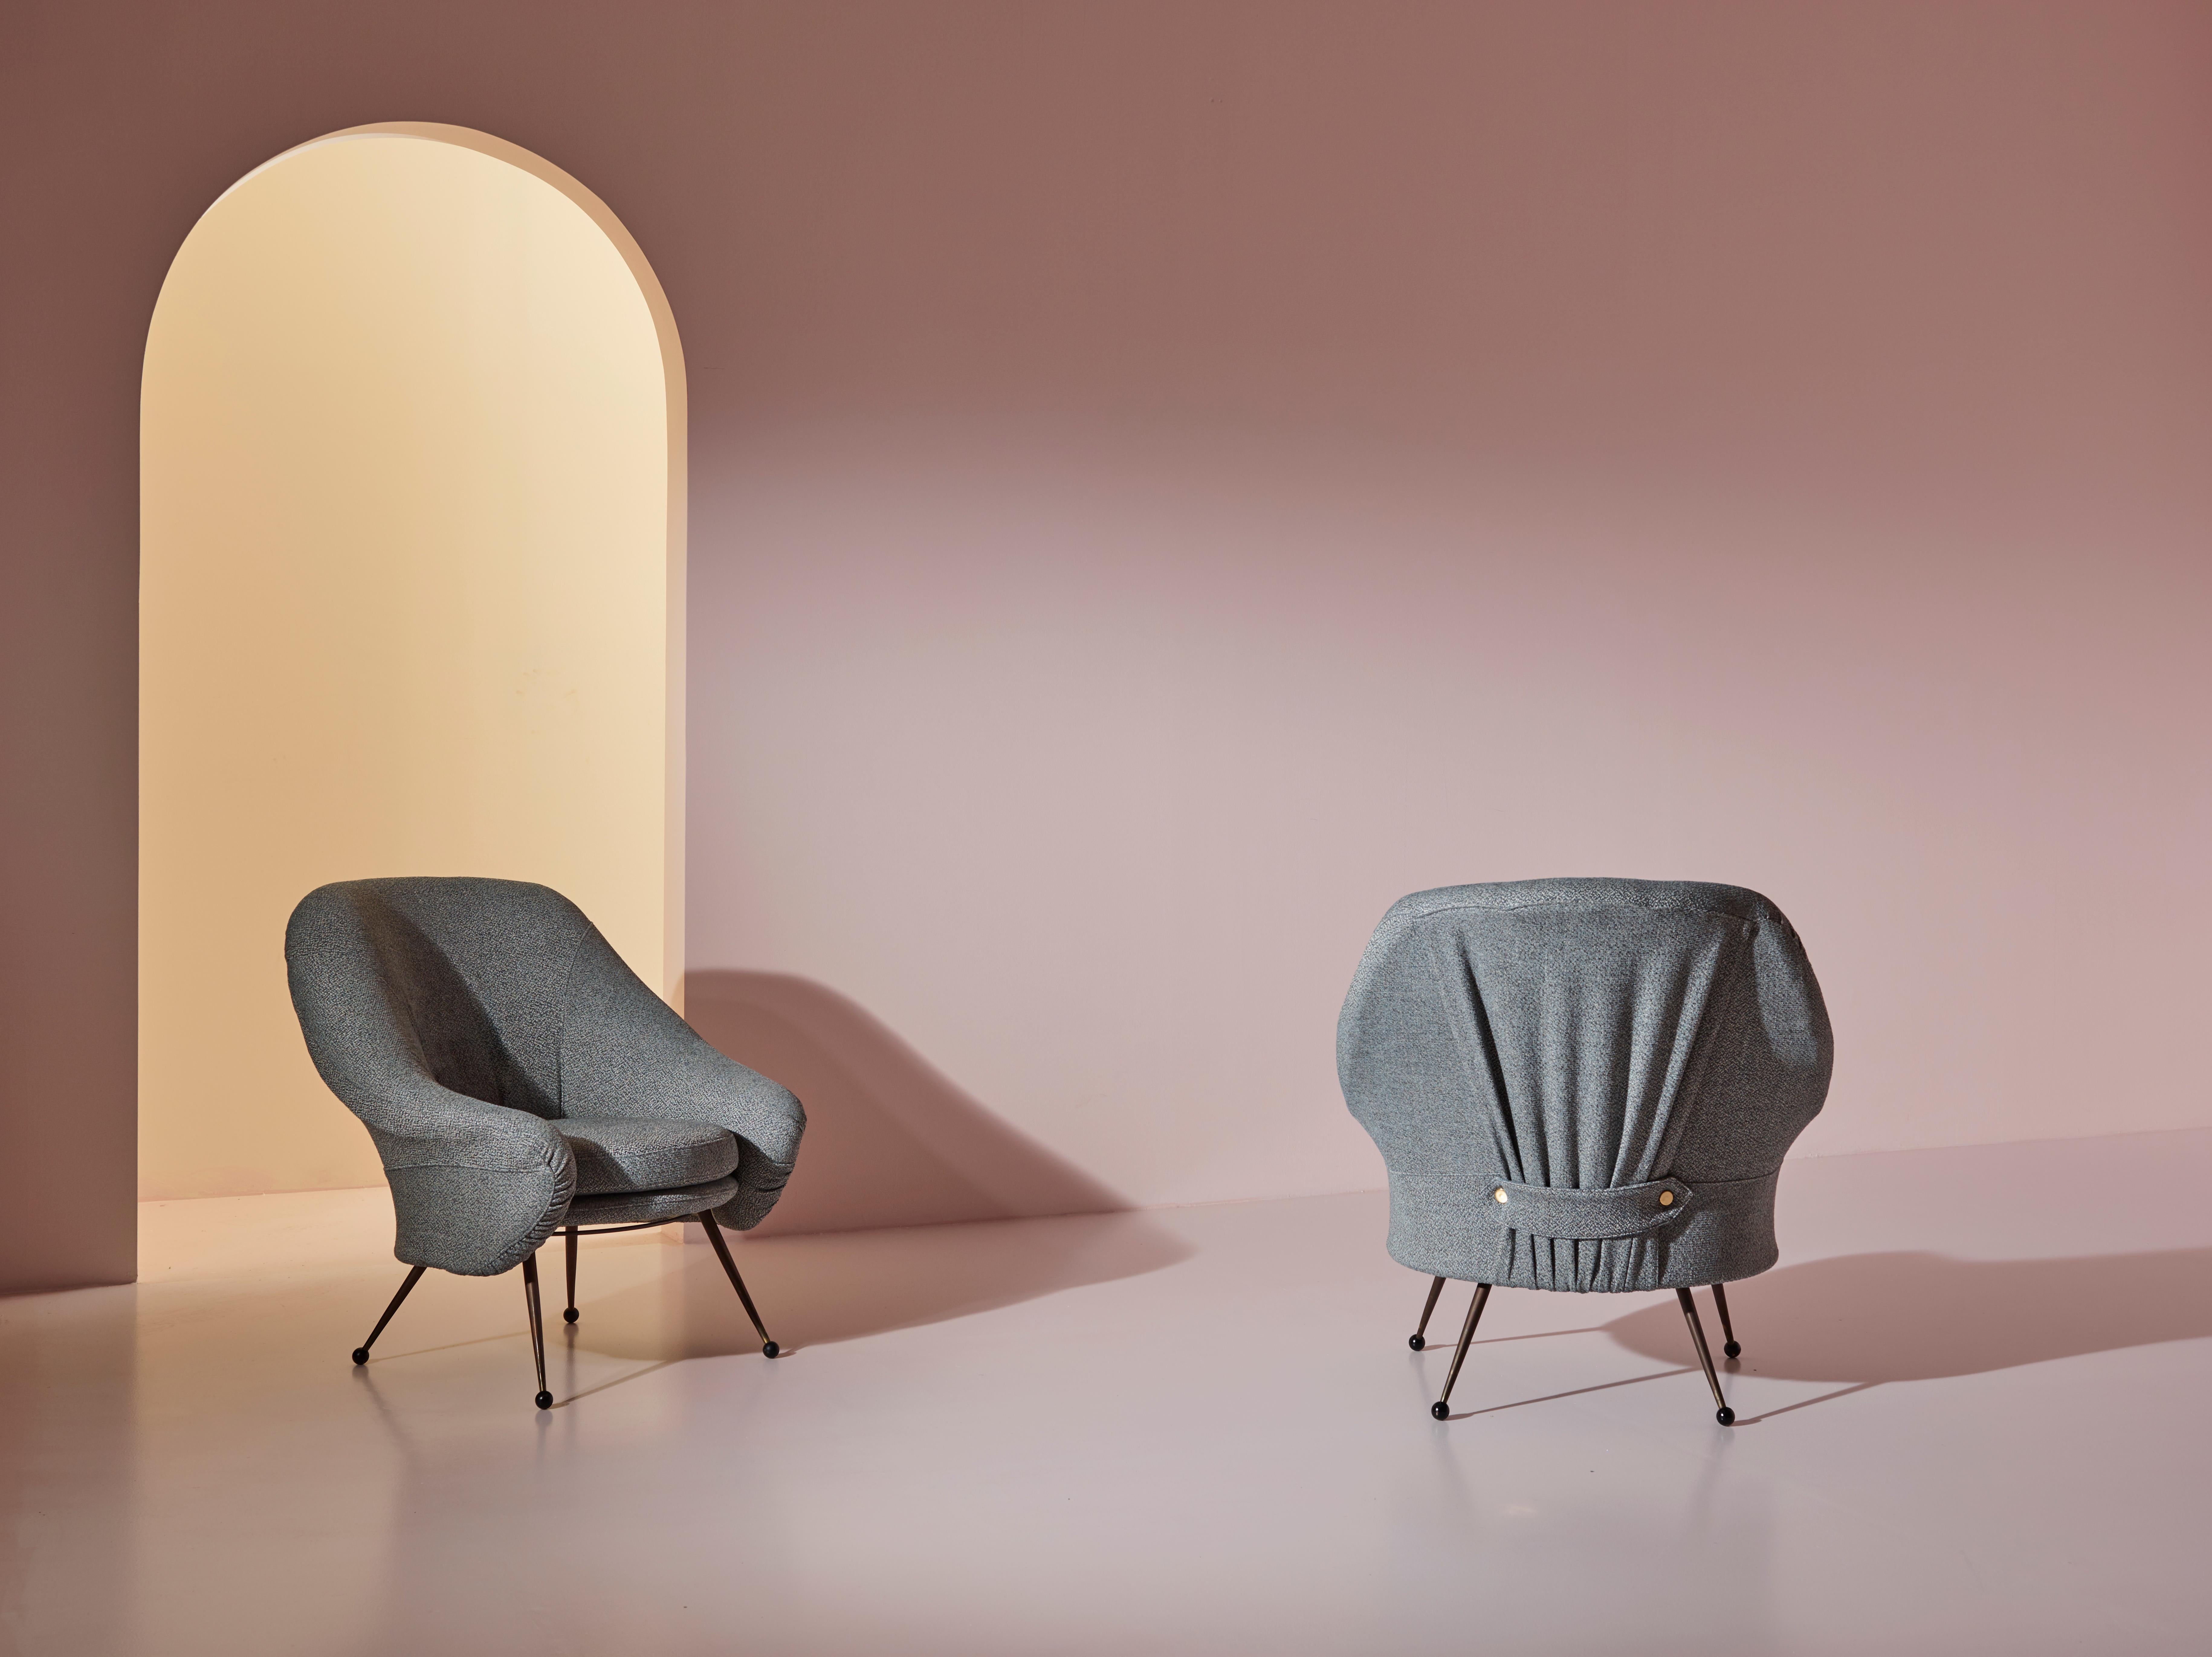 Ein elegantes Paar früher Martingala-Sessel von Marco Zanuso für Arflex, entworfen in den 1950er Jahren und neu gepolstert mit hochwertigem grauem Stoff, befindet sich in einem hervorragenden Vintage-Zustand.

Die Stühle zeichnen sich durch klare